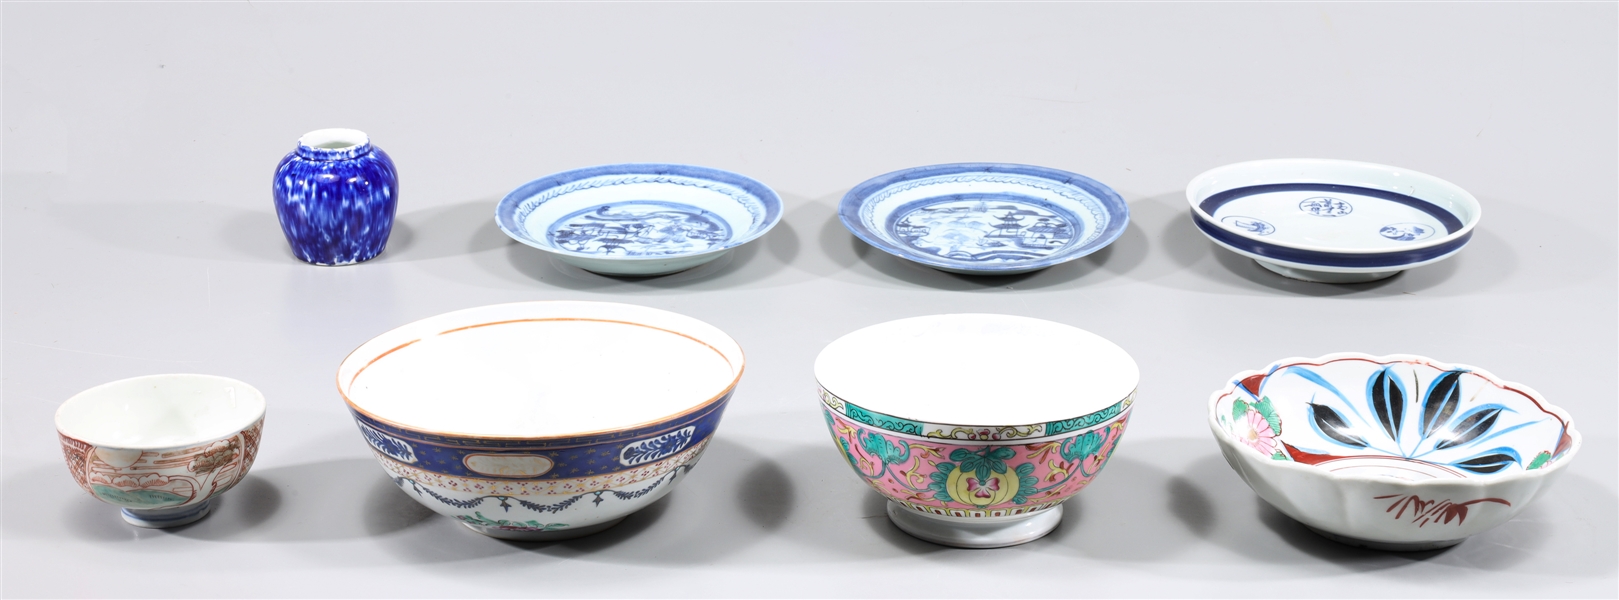 Group of eight antique ceramics 3041d4